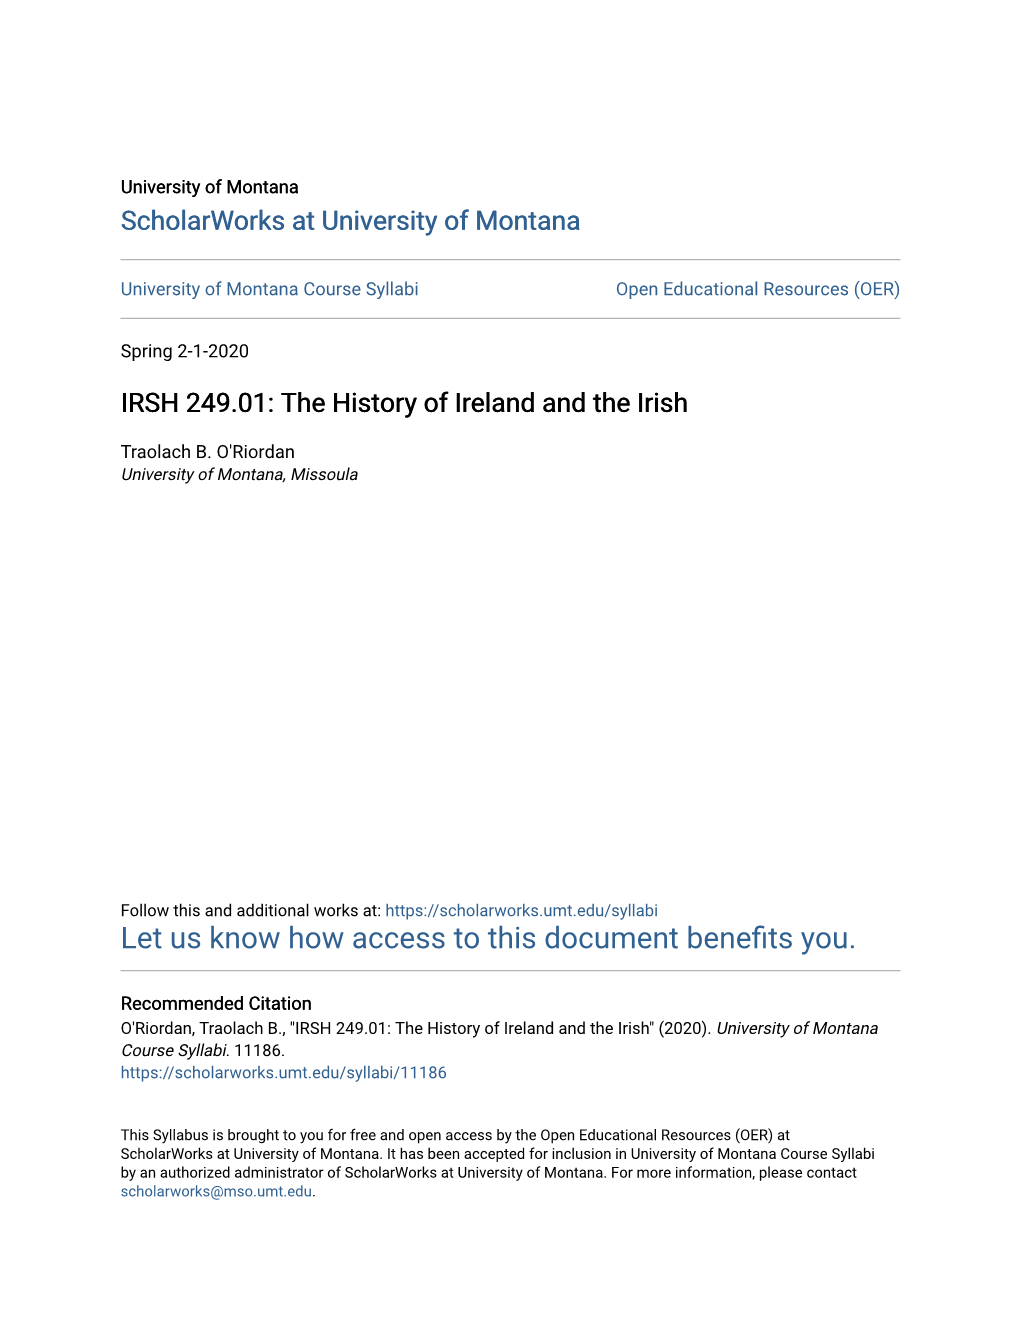 IRSH 249.01: the History of Ireland and the Irish